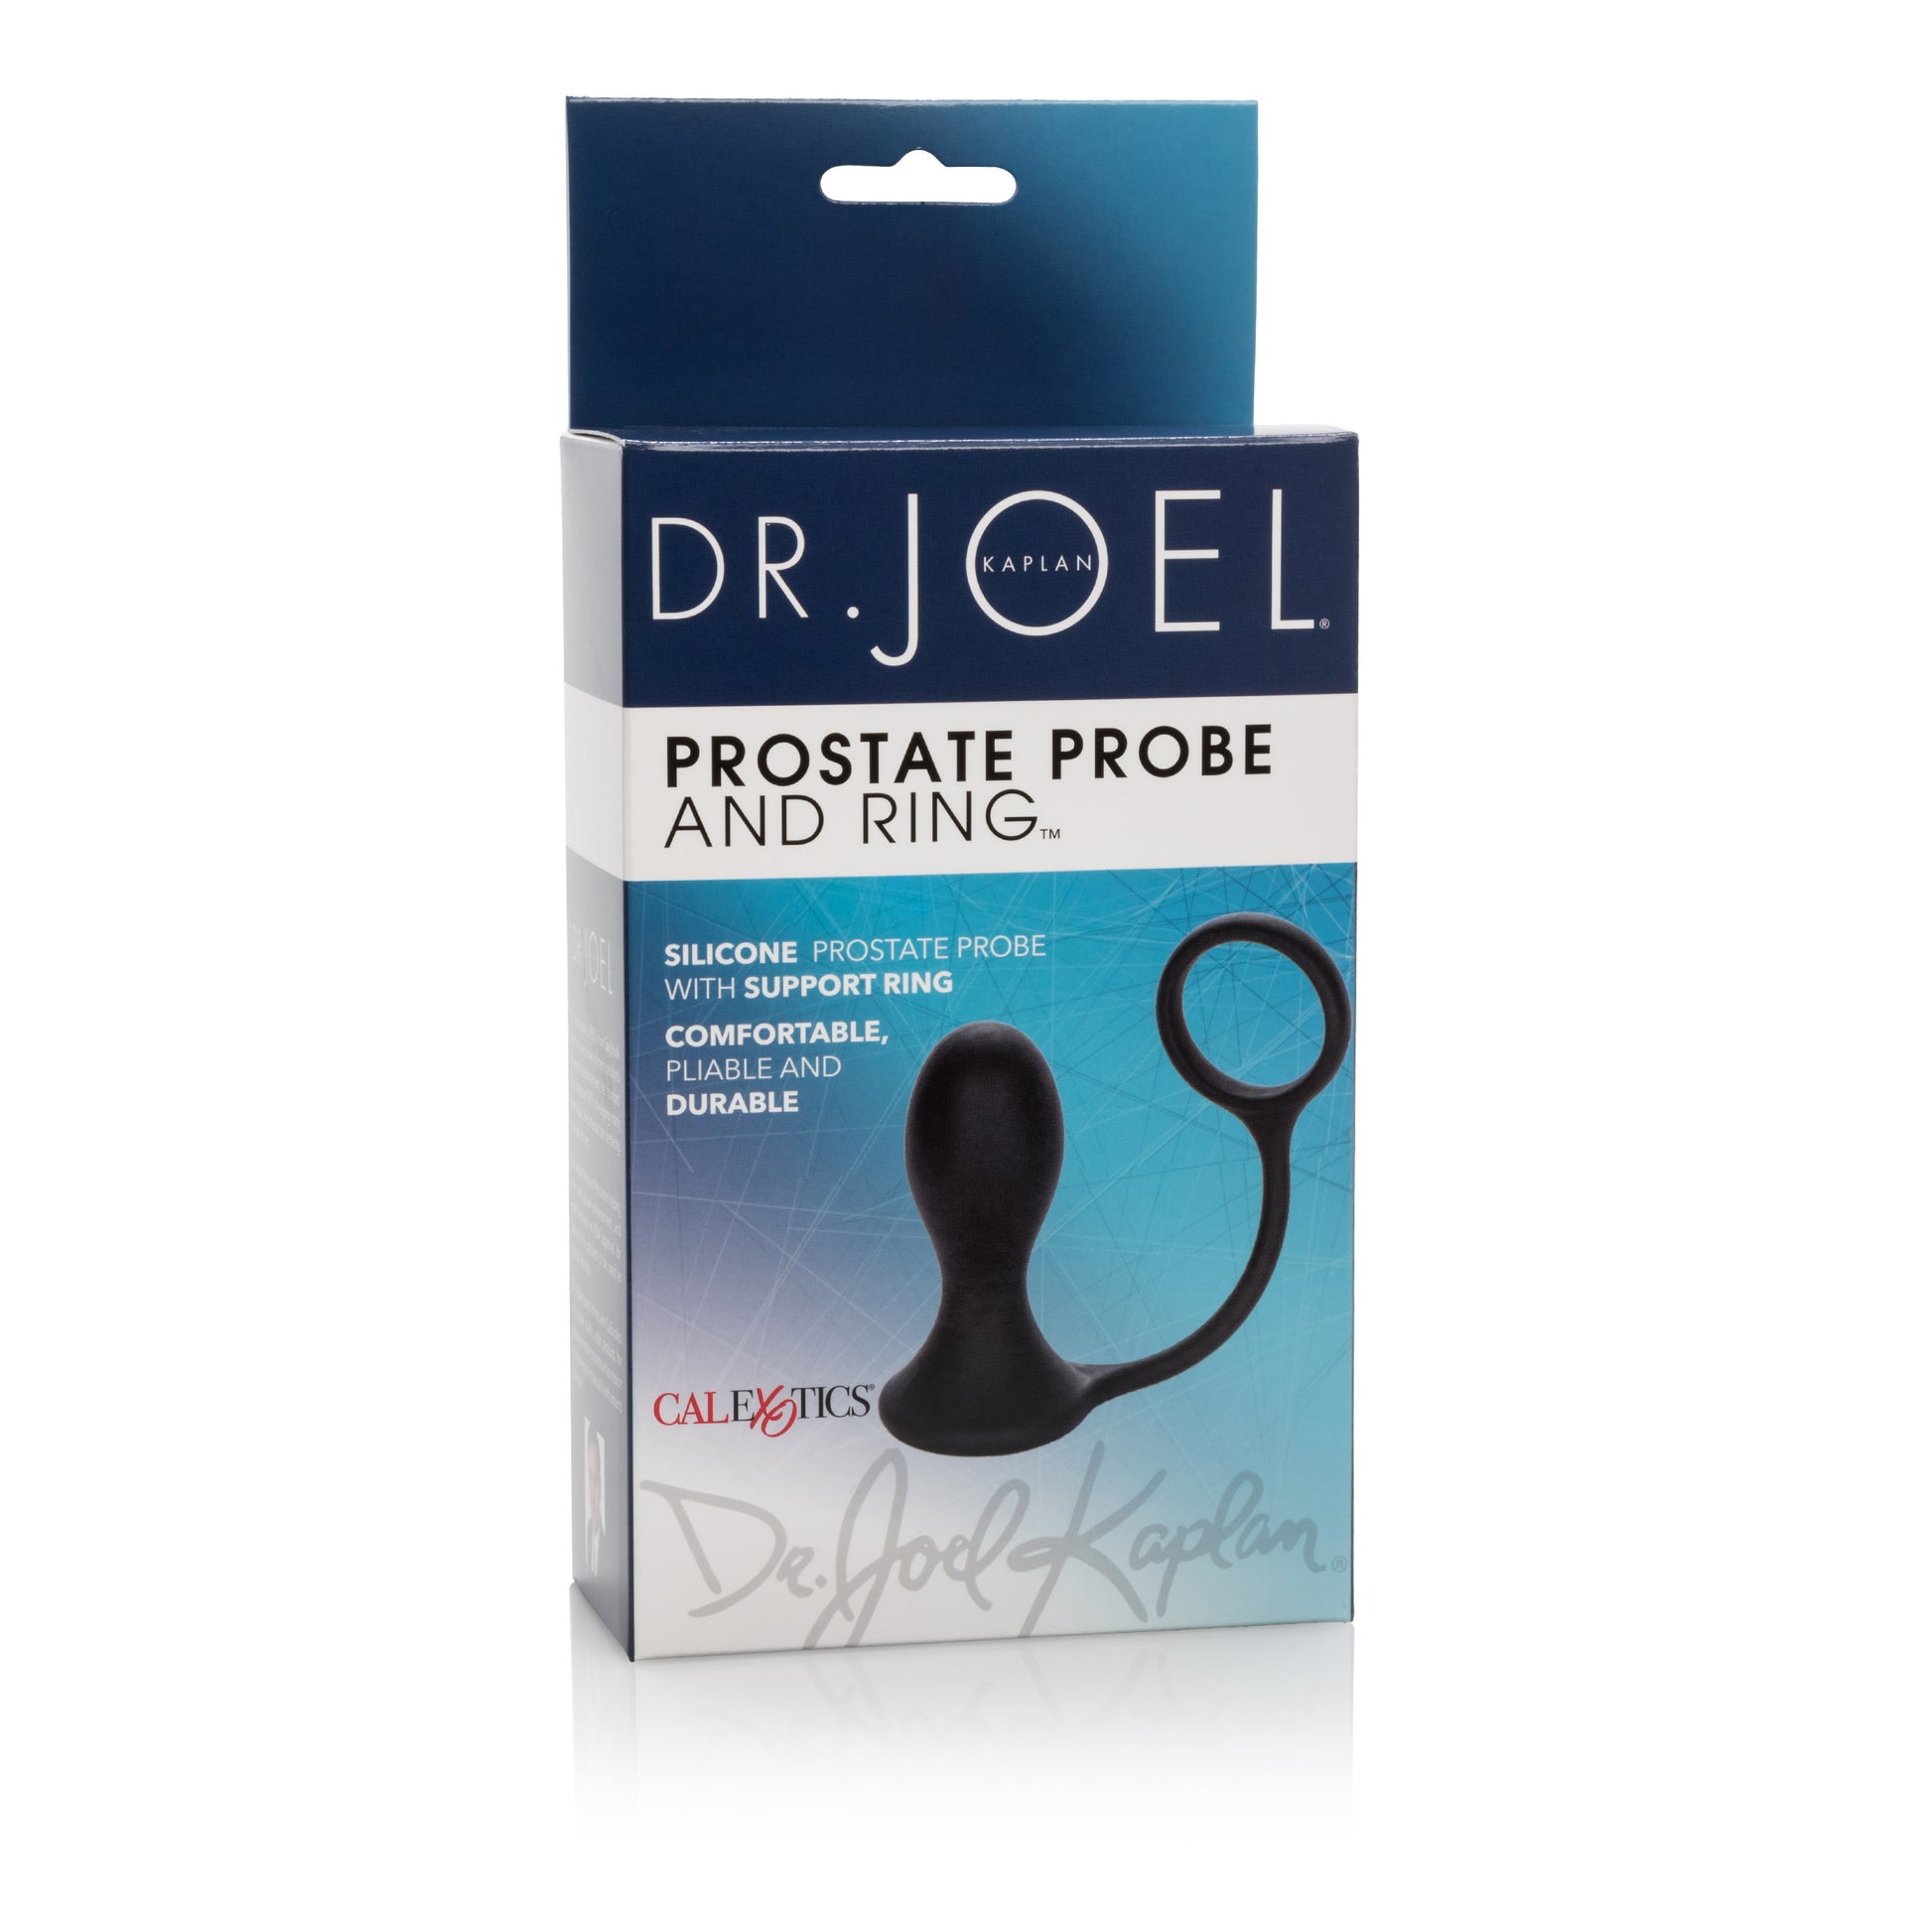 Dr. Joel Kaplan Prostate Probe and Ring - Black